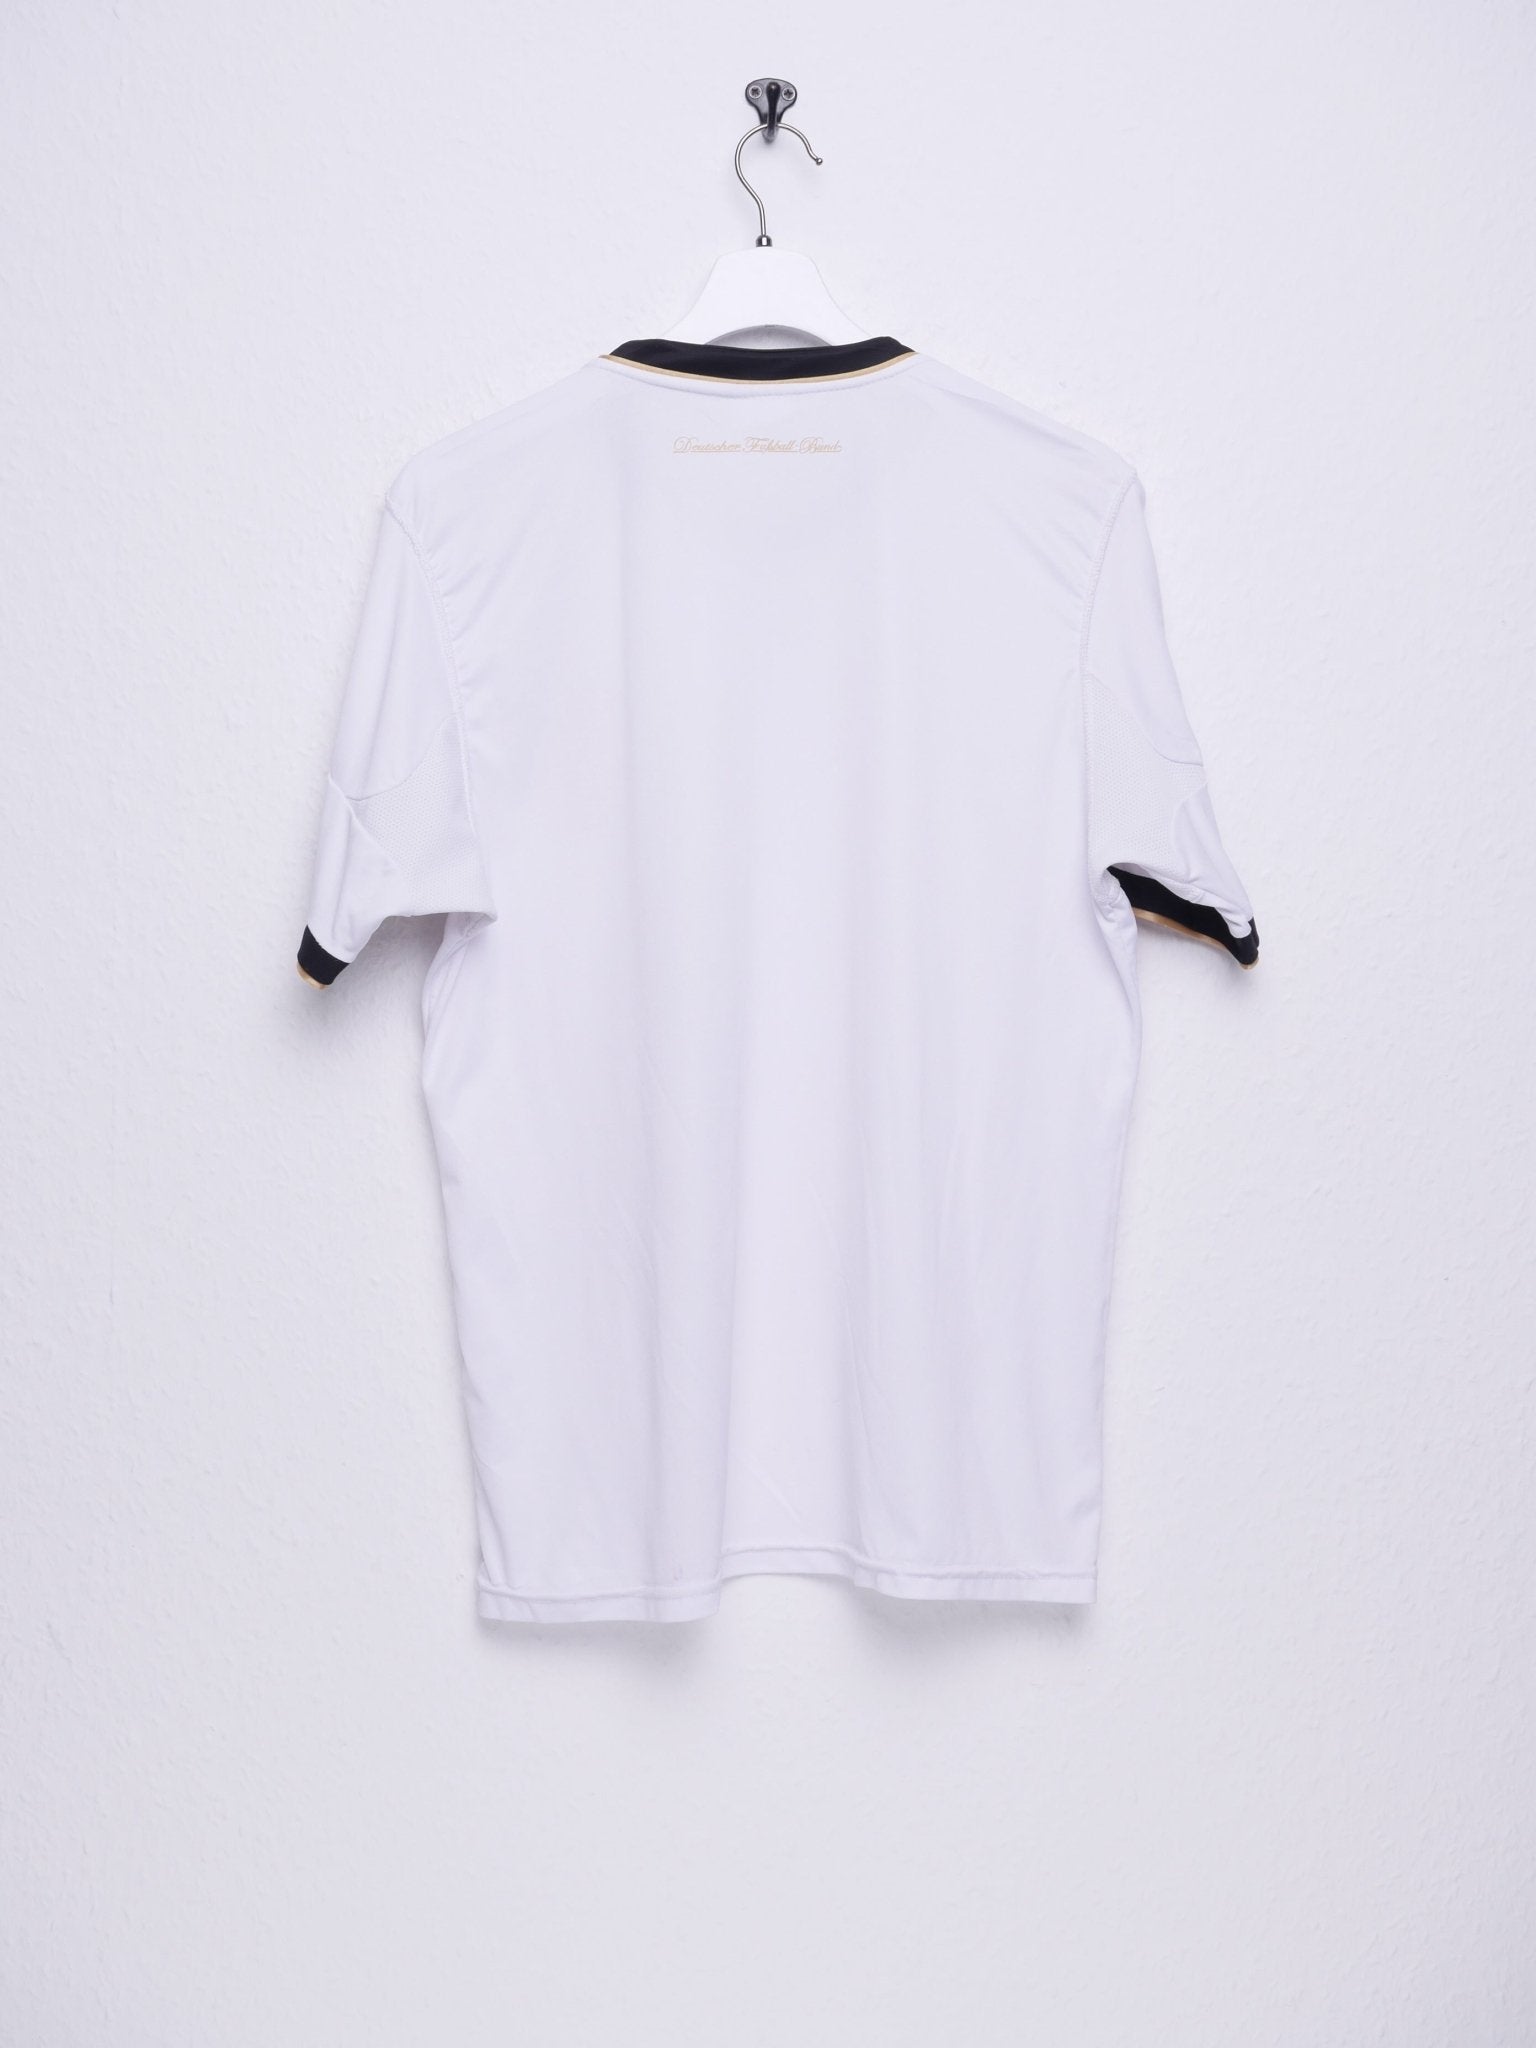 Adidas printed Logo 'German National Team' white Jersey Shirt - Peeces